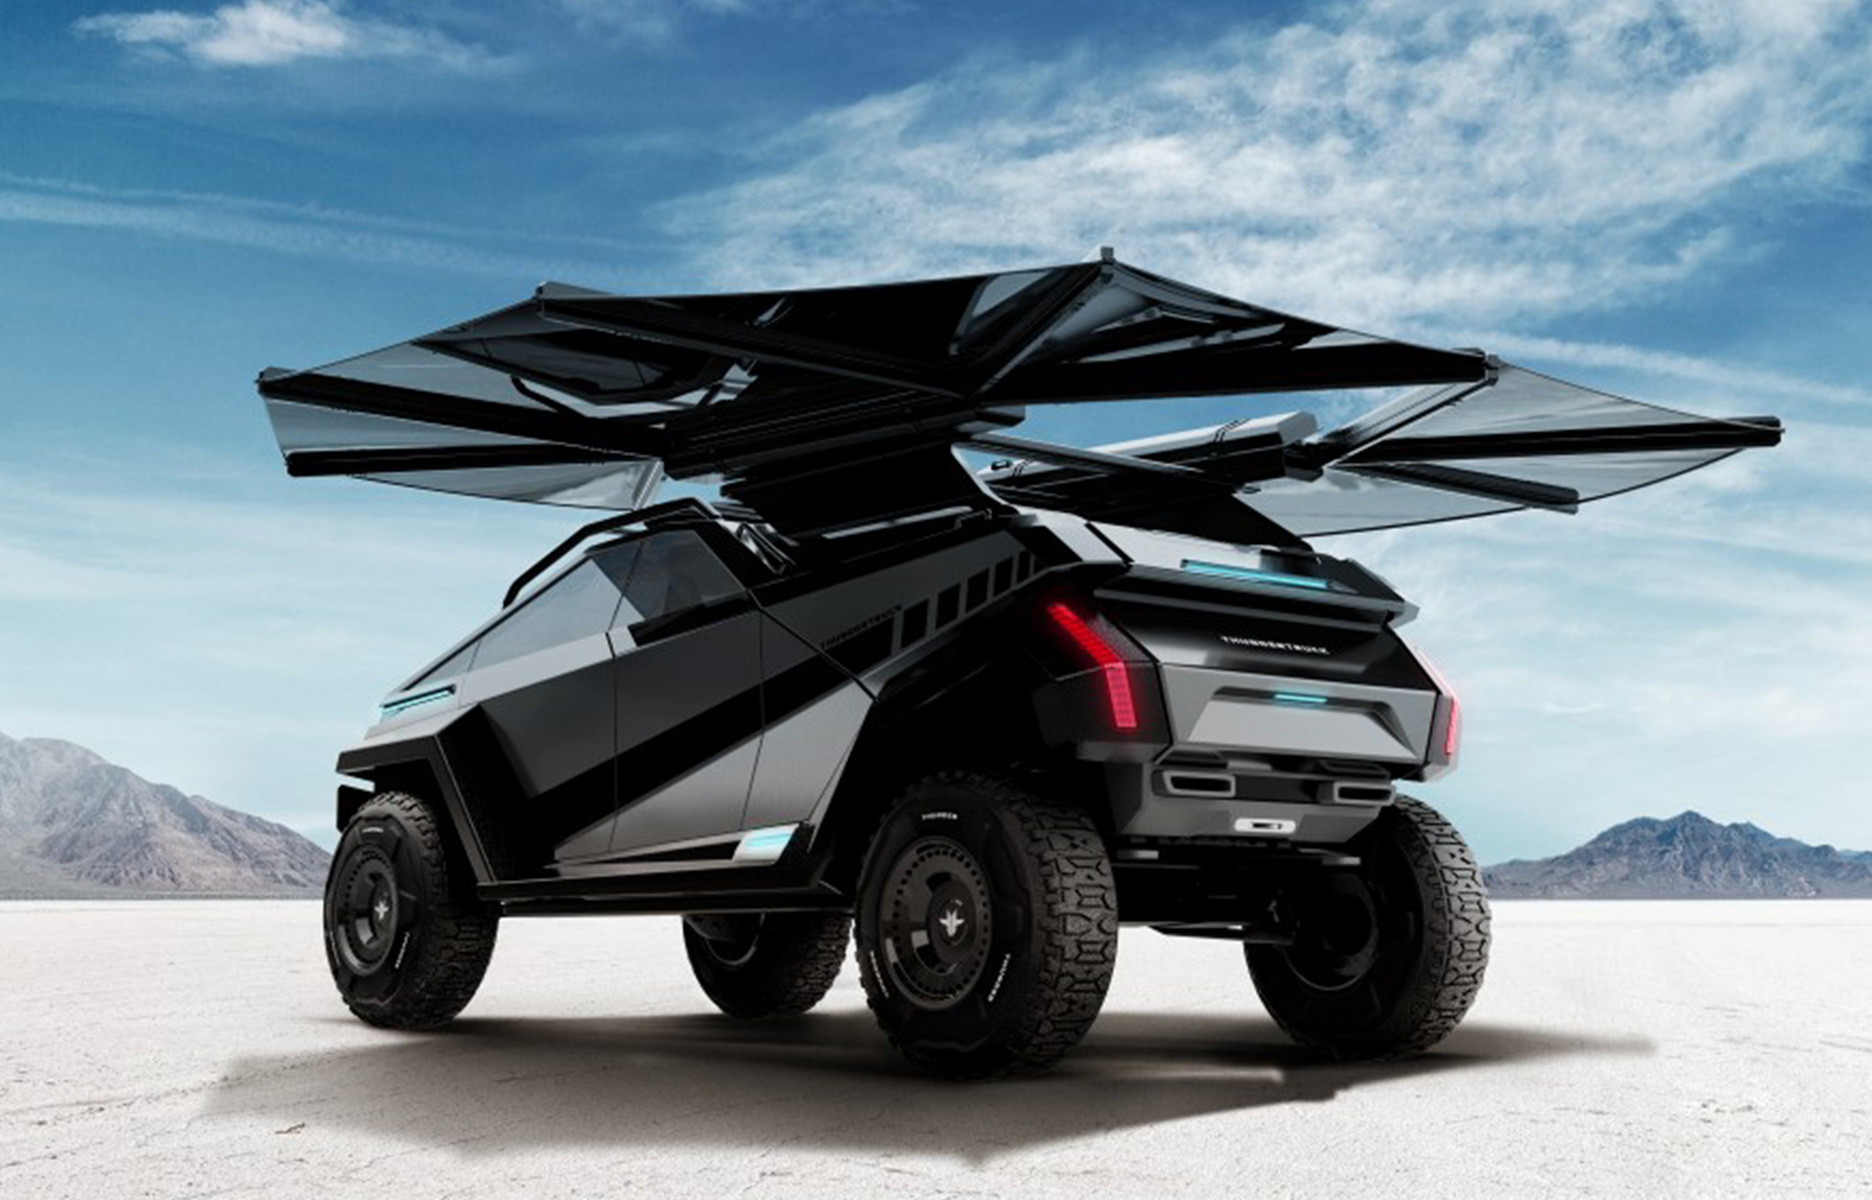 Thundertruck un pick-up concept équipé de panneaux solaires - the good life